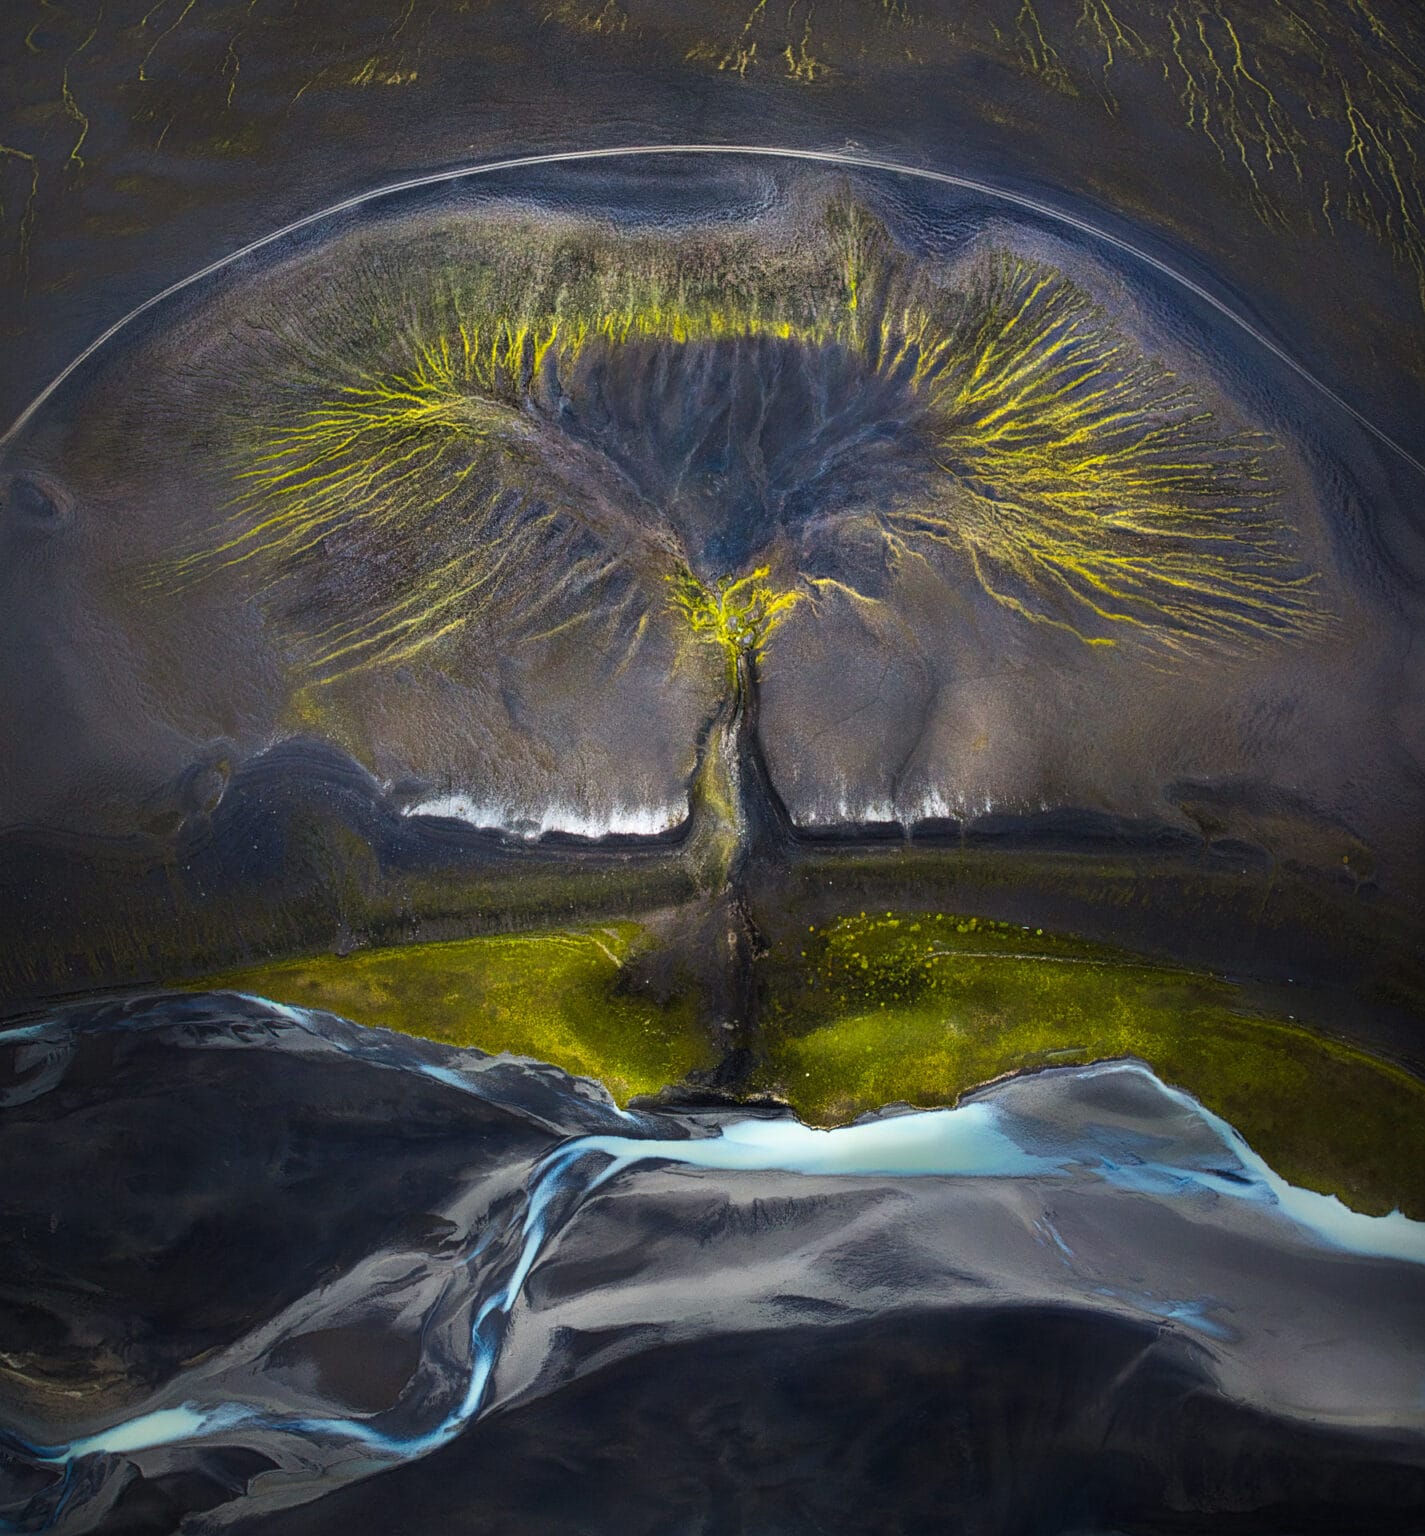 Uma vista aérea da arte da natureza nas terras altas da Islândia. Sulcos, rios e vegetação convergem para formar um padrão semelhante a uma árvore, mostrando a criatividade da natureza enquanto pinta uma obra de arte complexa contra a paisagem acidentada da Islândia. Isabella Tabacchi. 